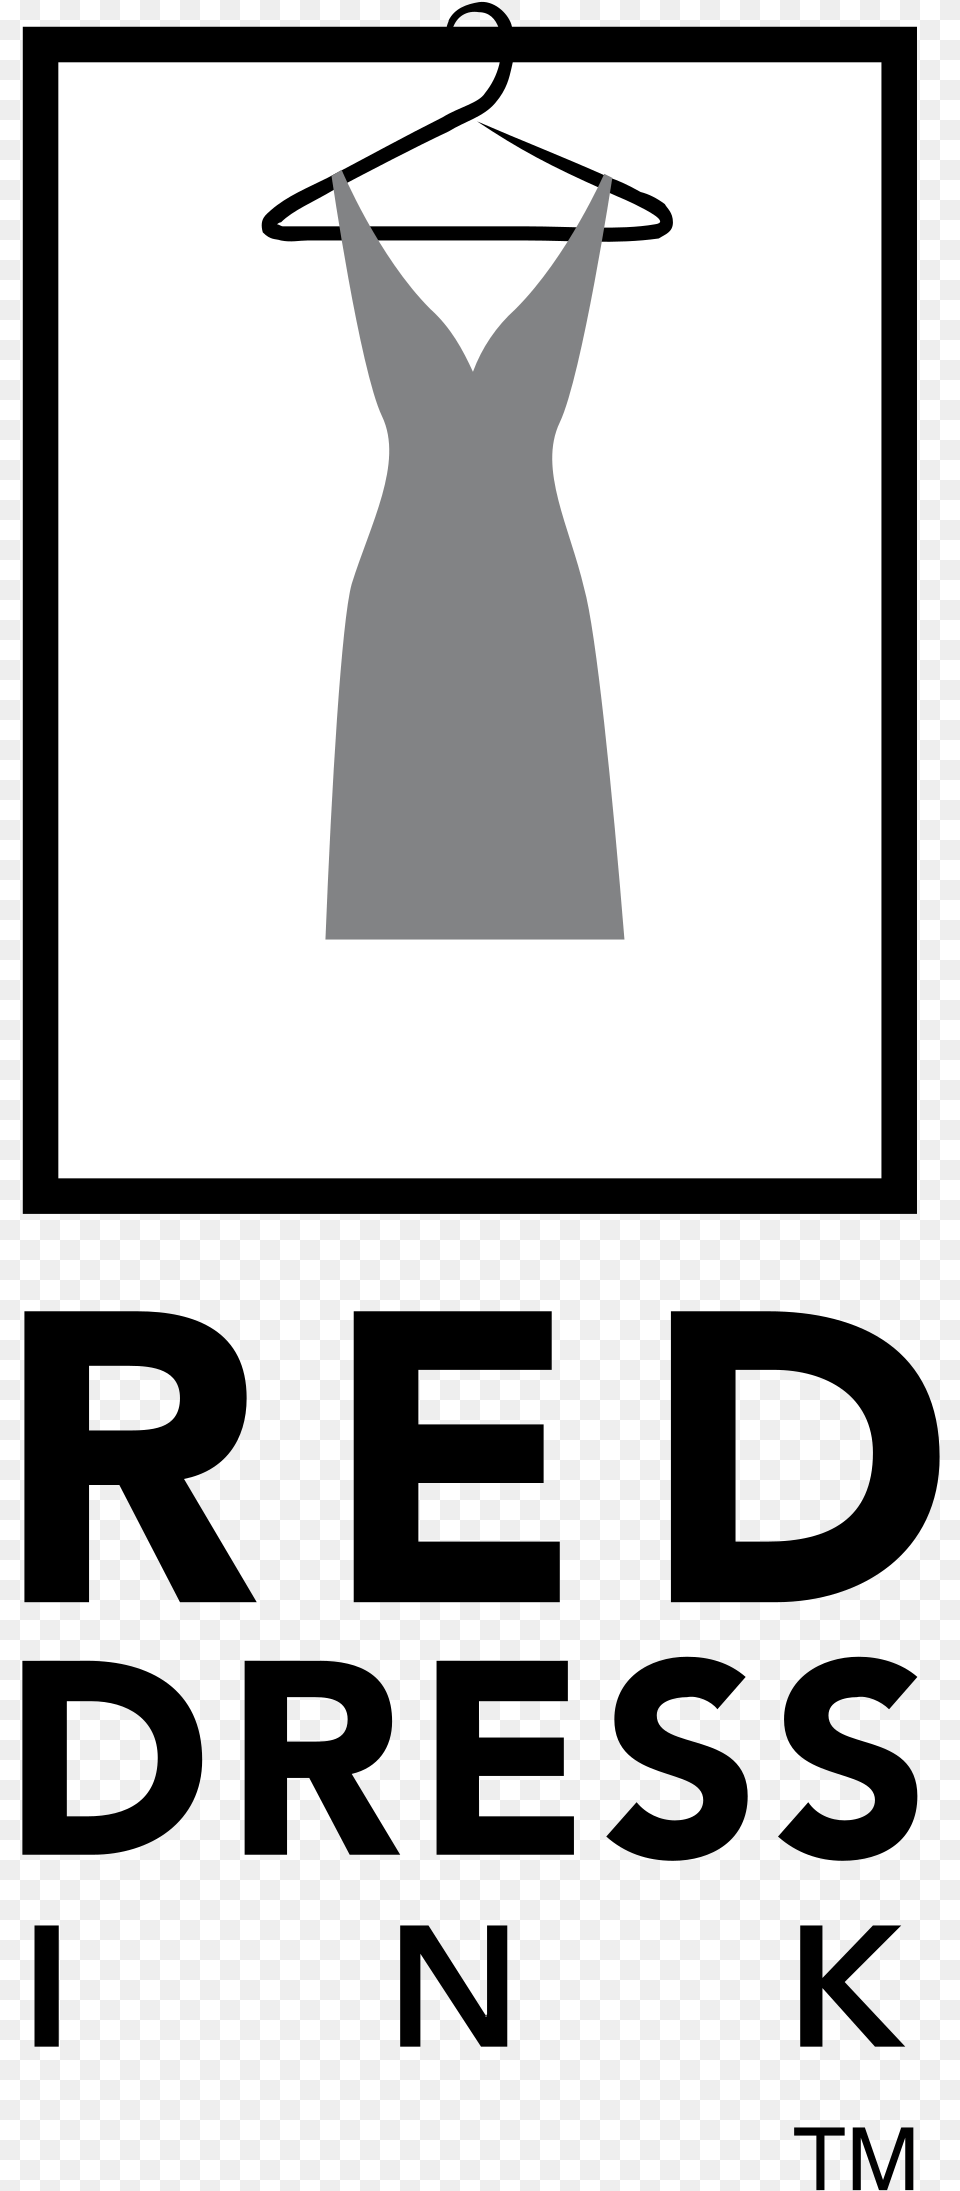 Red Dress Ink Logo Transparent Banner, Clothing, Formal Wear, Boutique, Shop Free Png